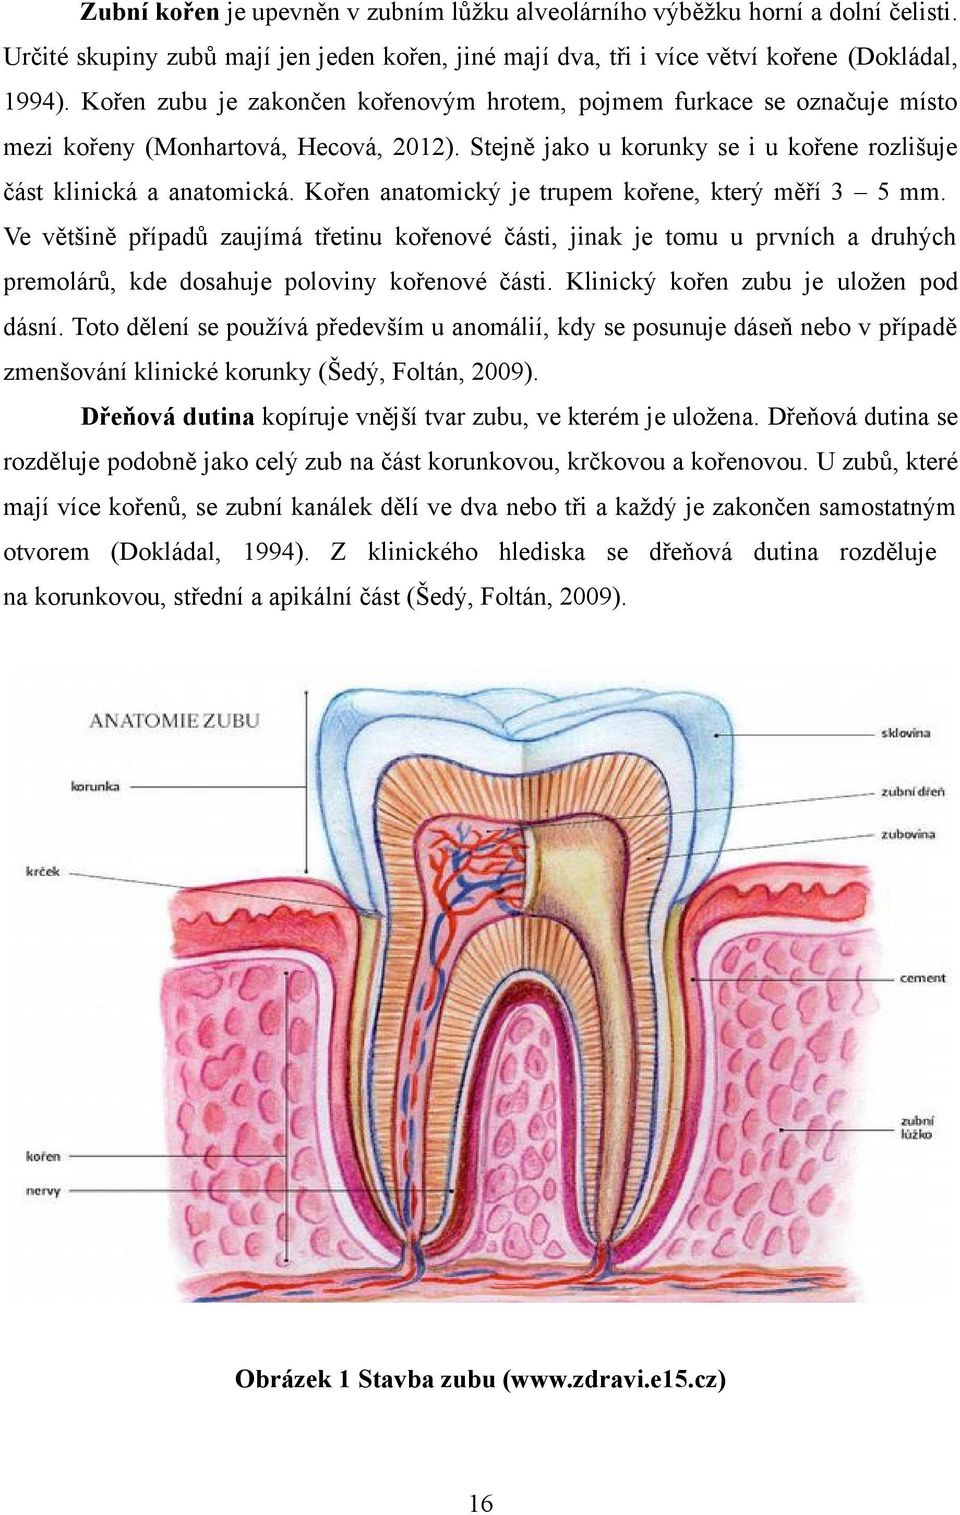 Kořen anatomický je trupem kořene, který měří 3 5 mm. Ve většině případů zaujímá třetinu kořenové části, jinak je tomu u prvních a druhých premolárů, kde dosahuje poloviny kořenové části.